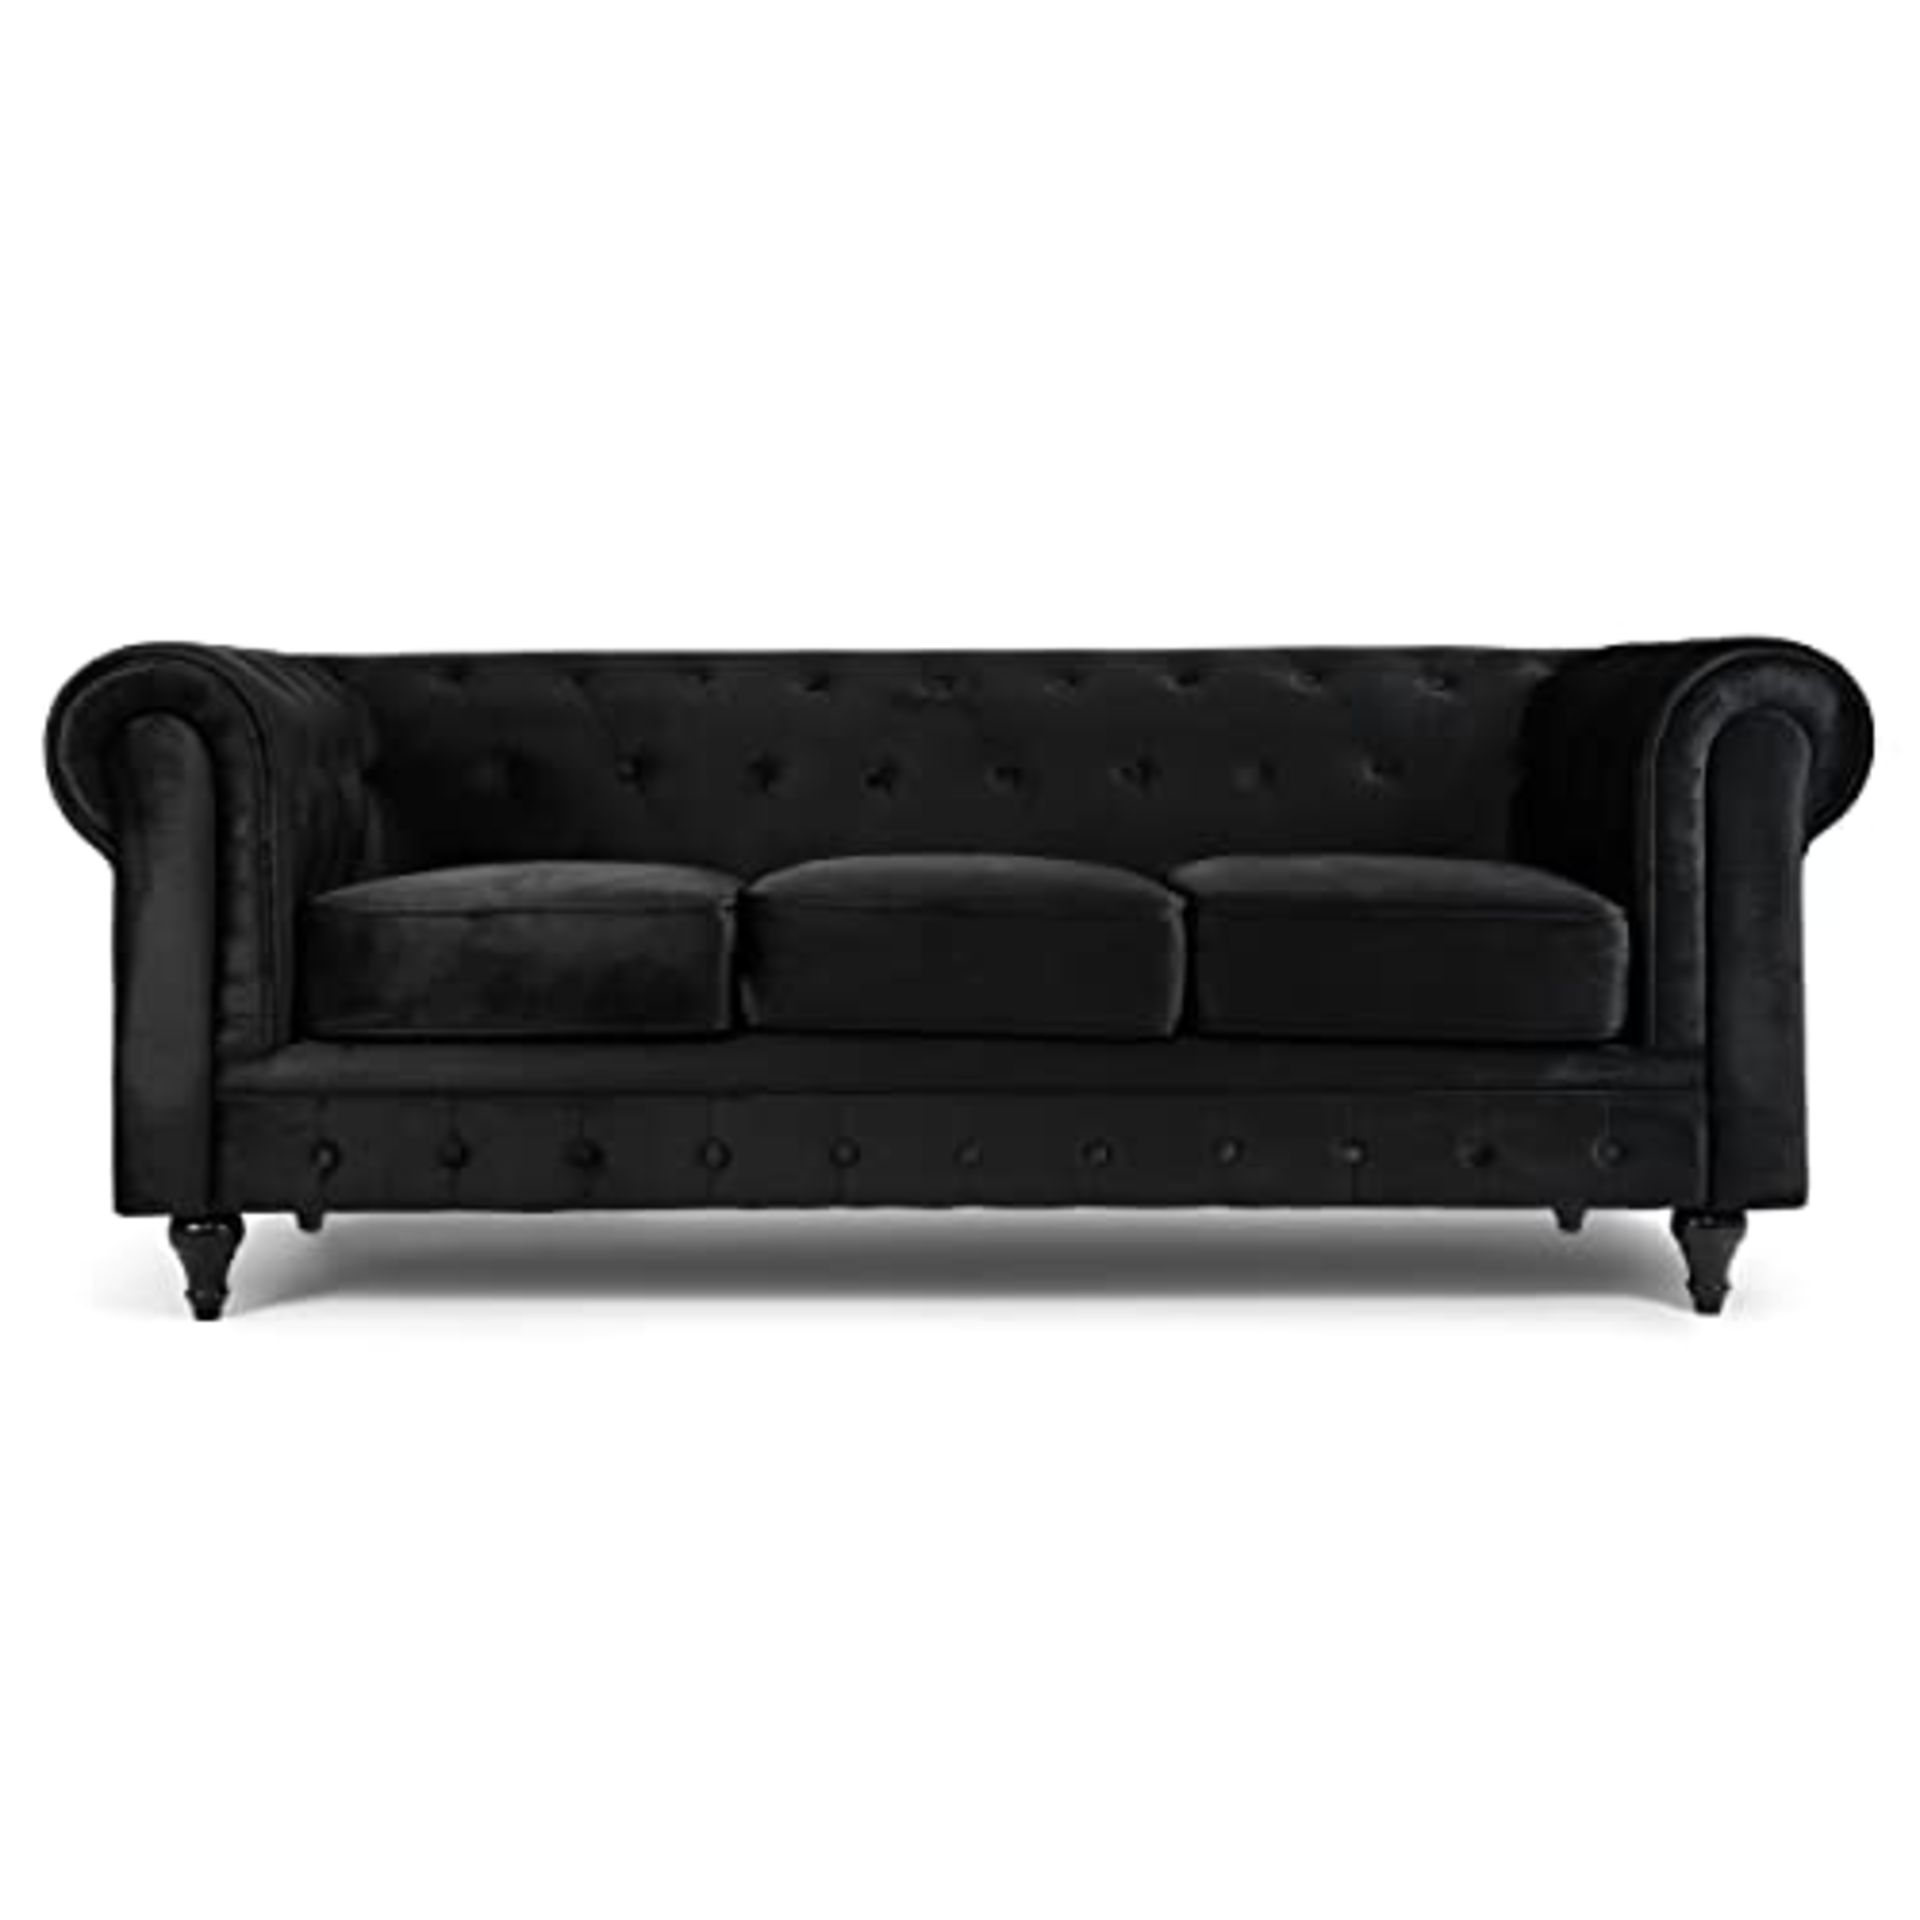 Bravich Velvet Chesterfield Sofa- Black. 3 Seater Settee, Soft Plush ...